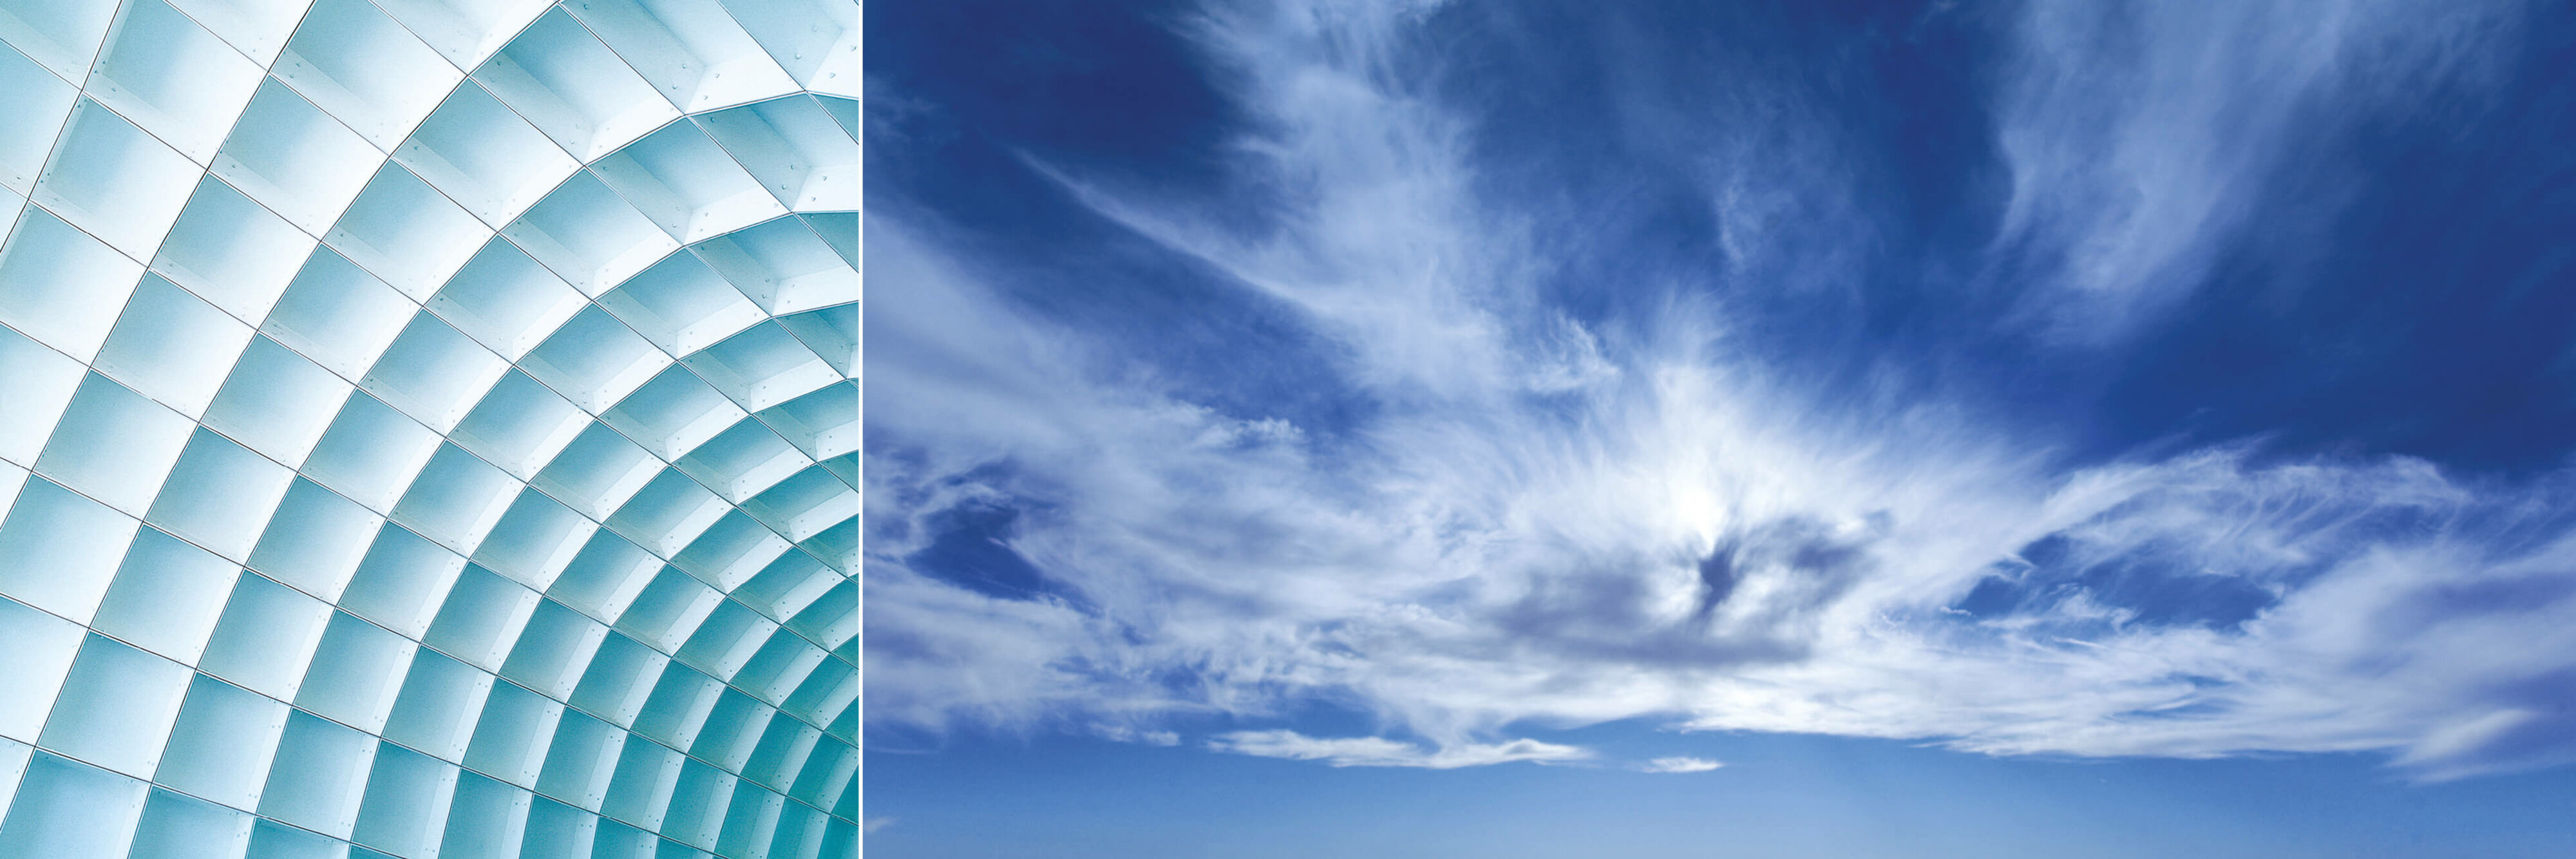 Bildkomposition, links: helle, moderne Dachkonstruktion, rechts: blauer Himmel mit freundlichen Wolkenschlieren